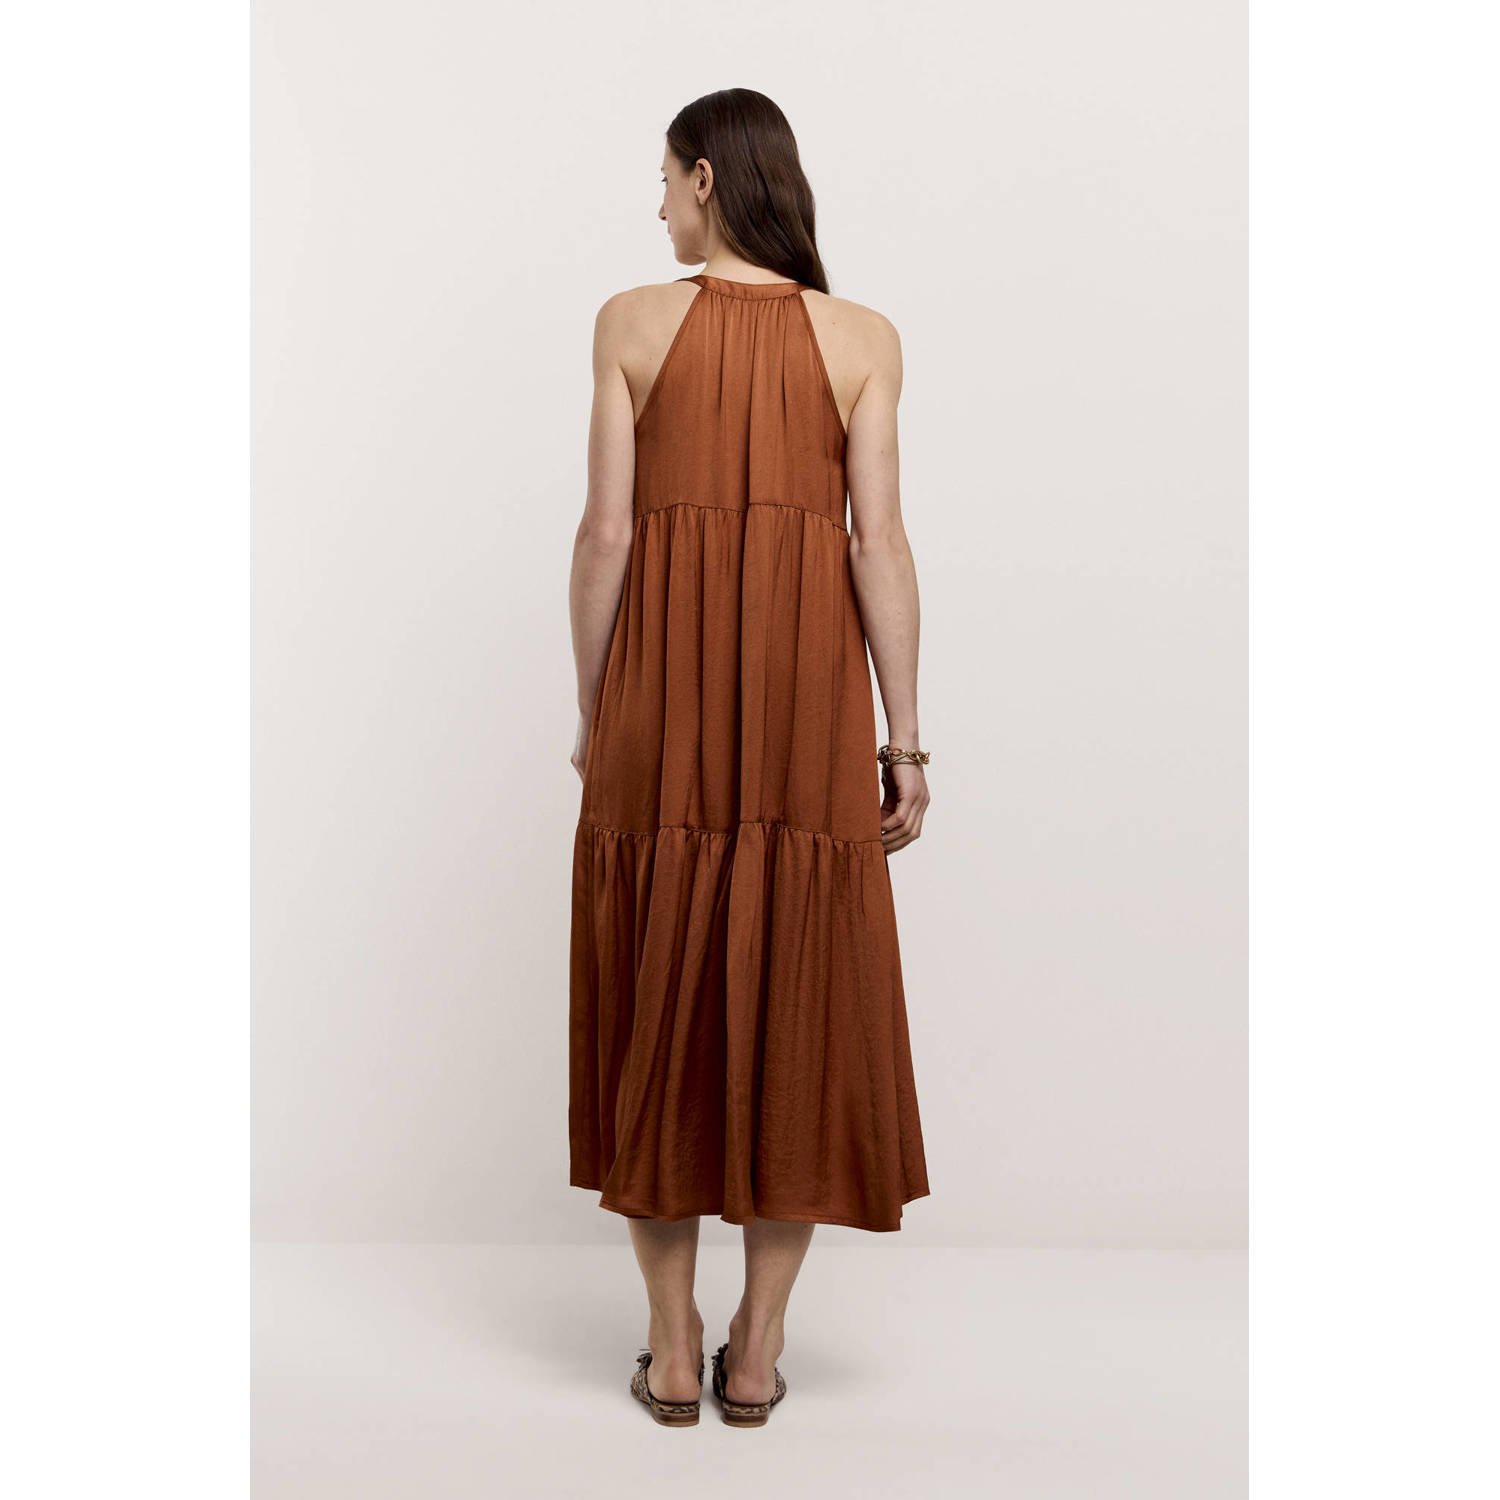 Summum A-lijn jurk bruin